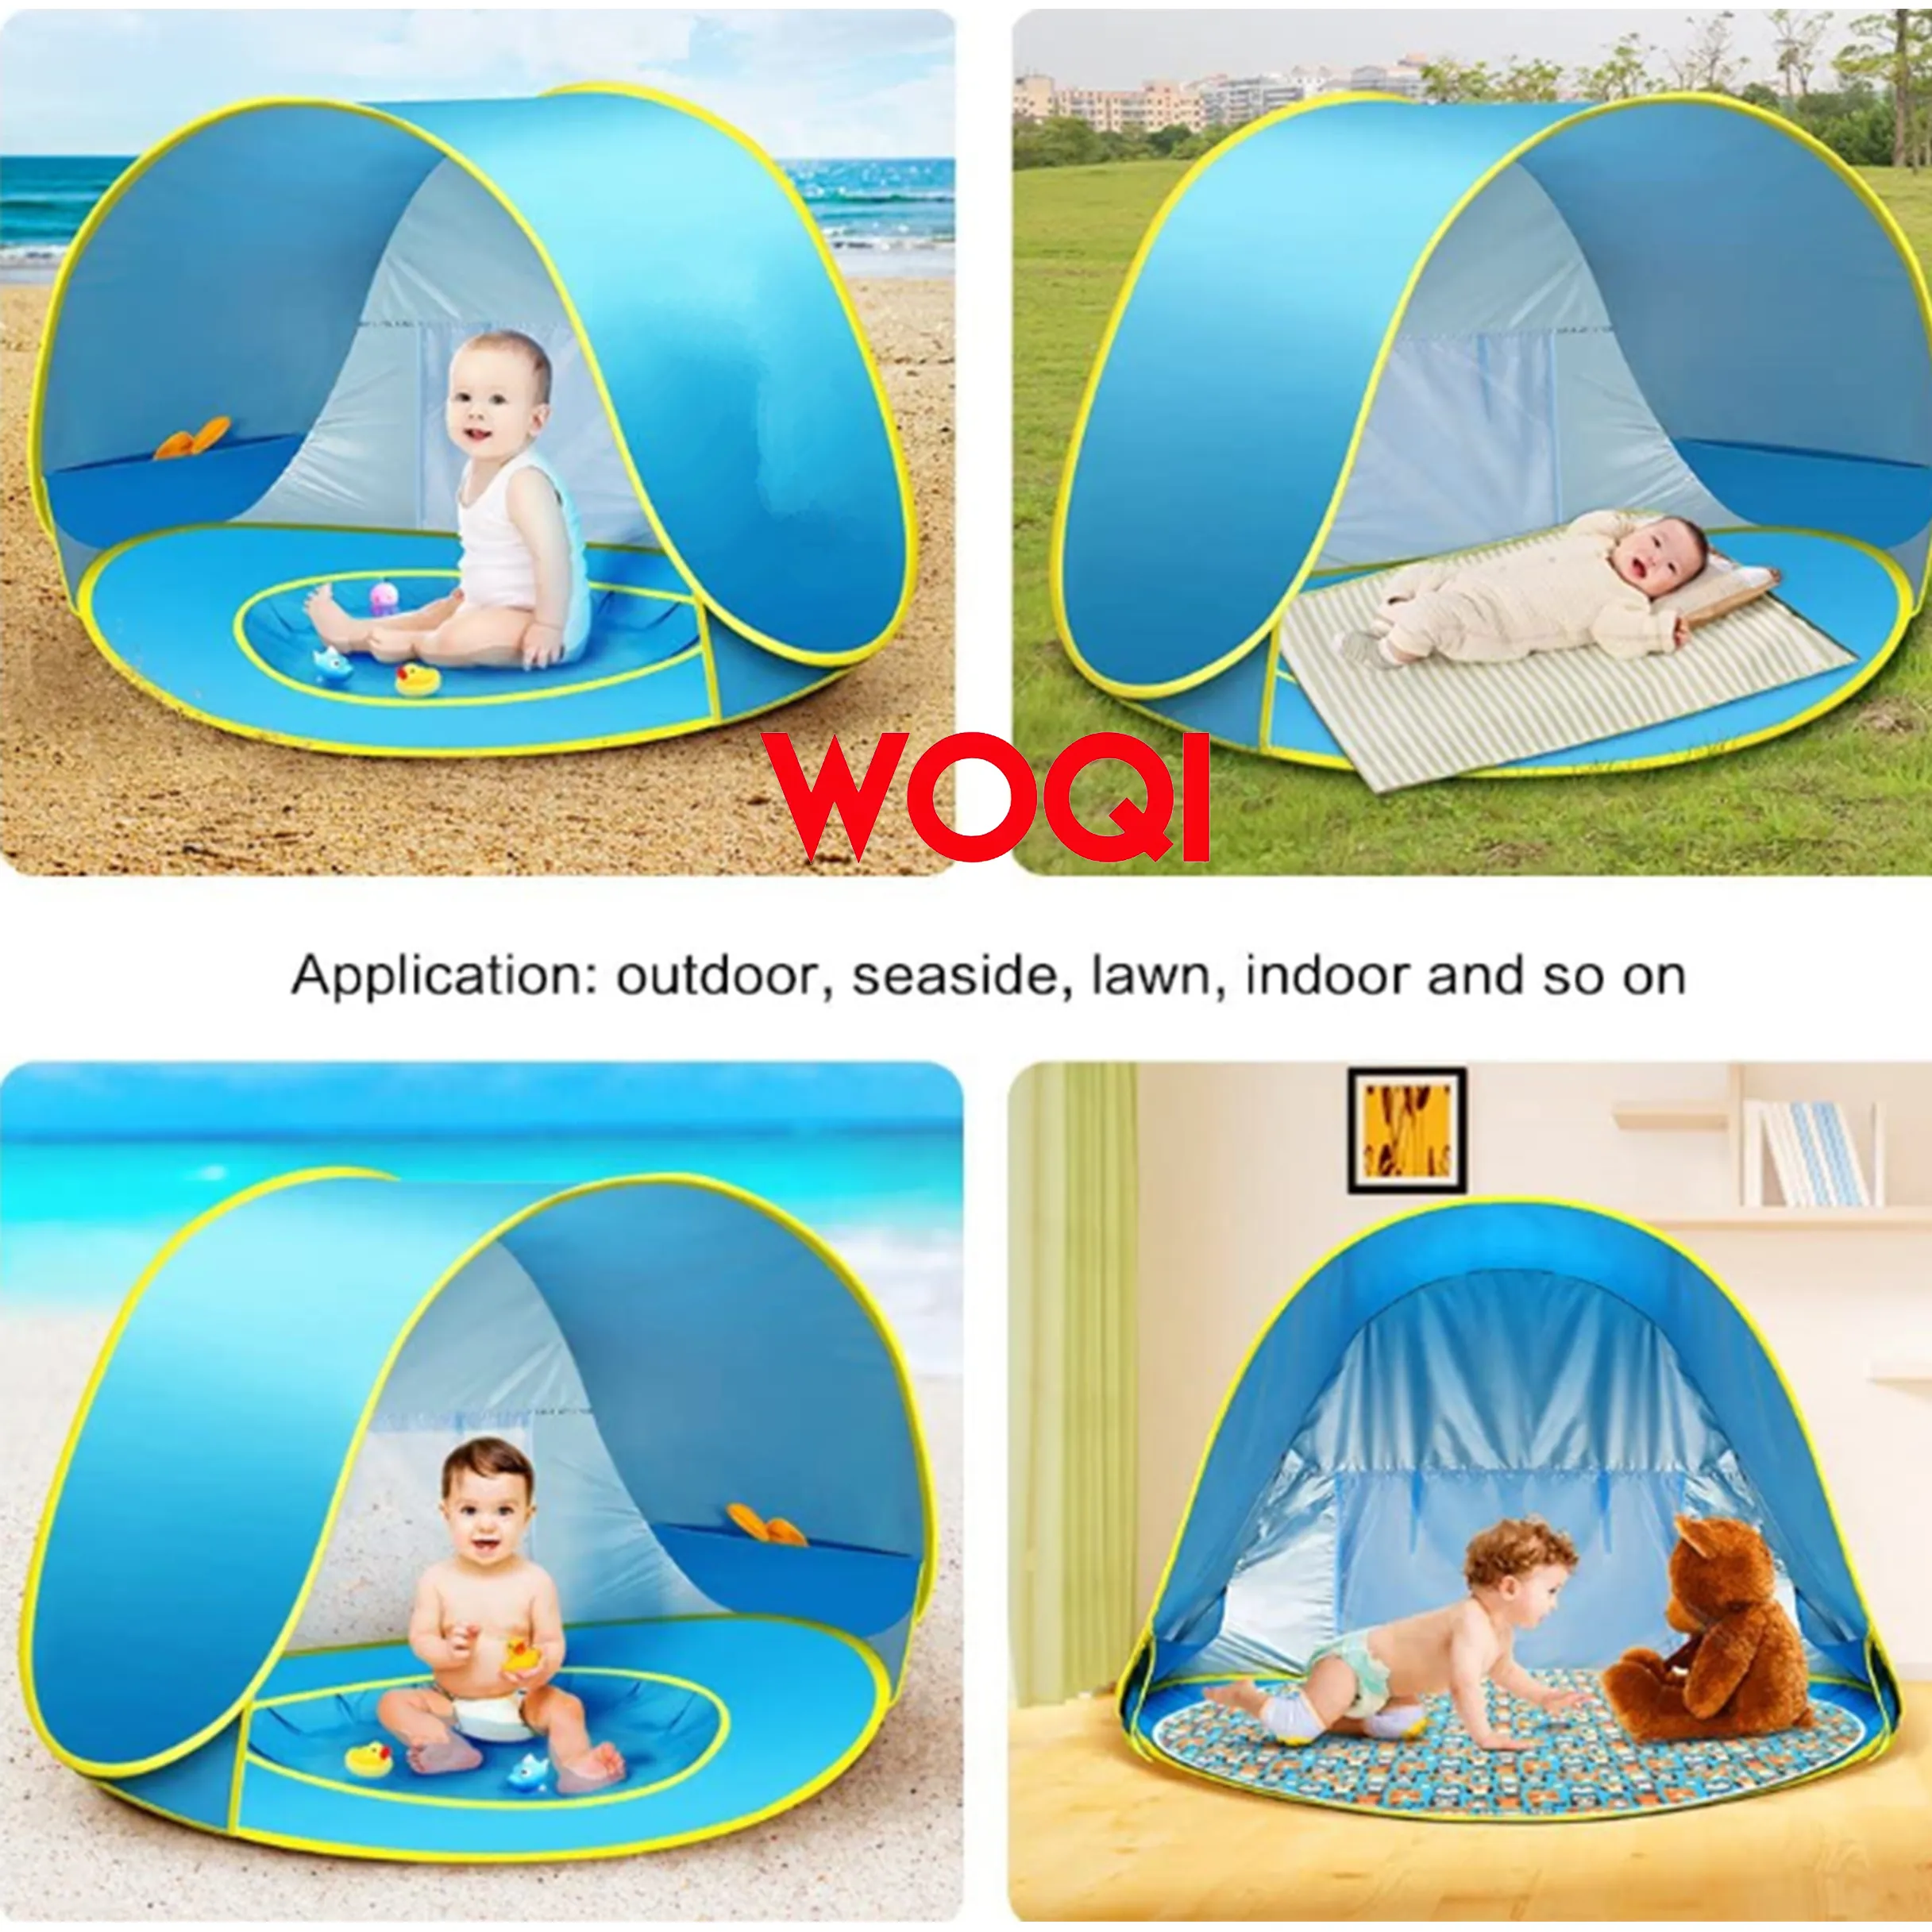 Woqiポップアップビーチテント屋外のキャンプInstantポップアップビーチテントAutomatic子供のためのインフレータブルテント